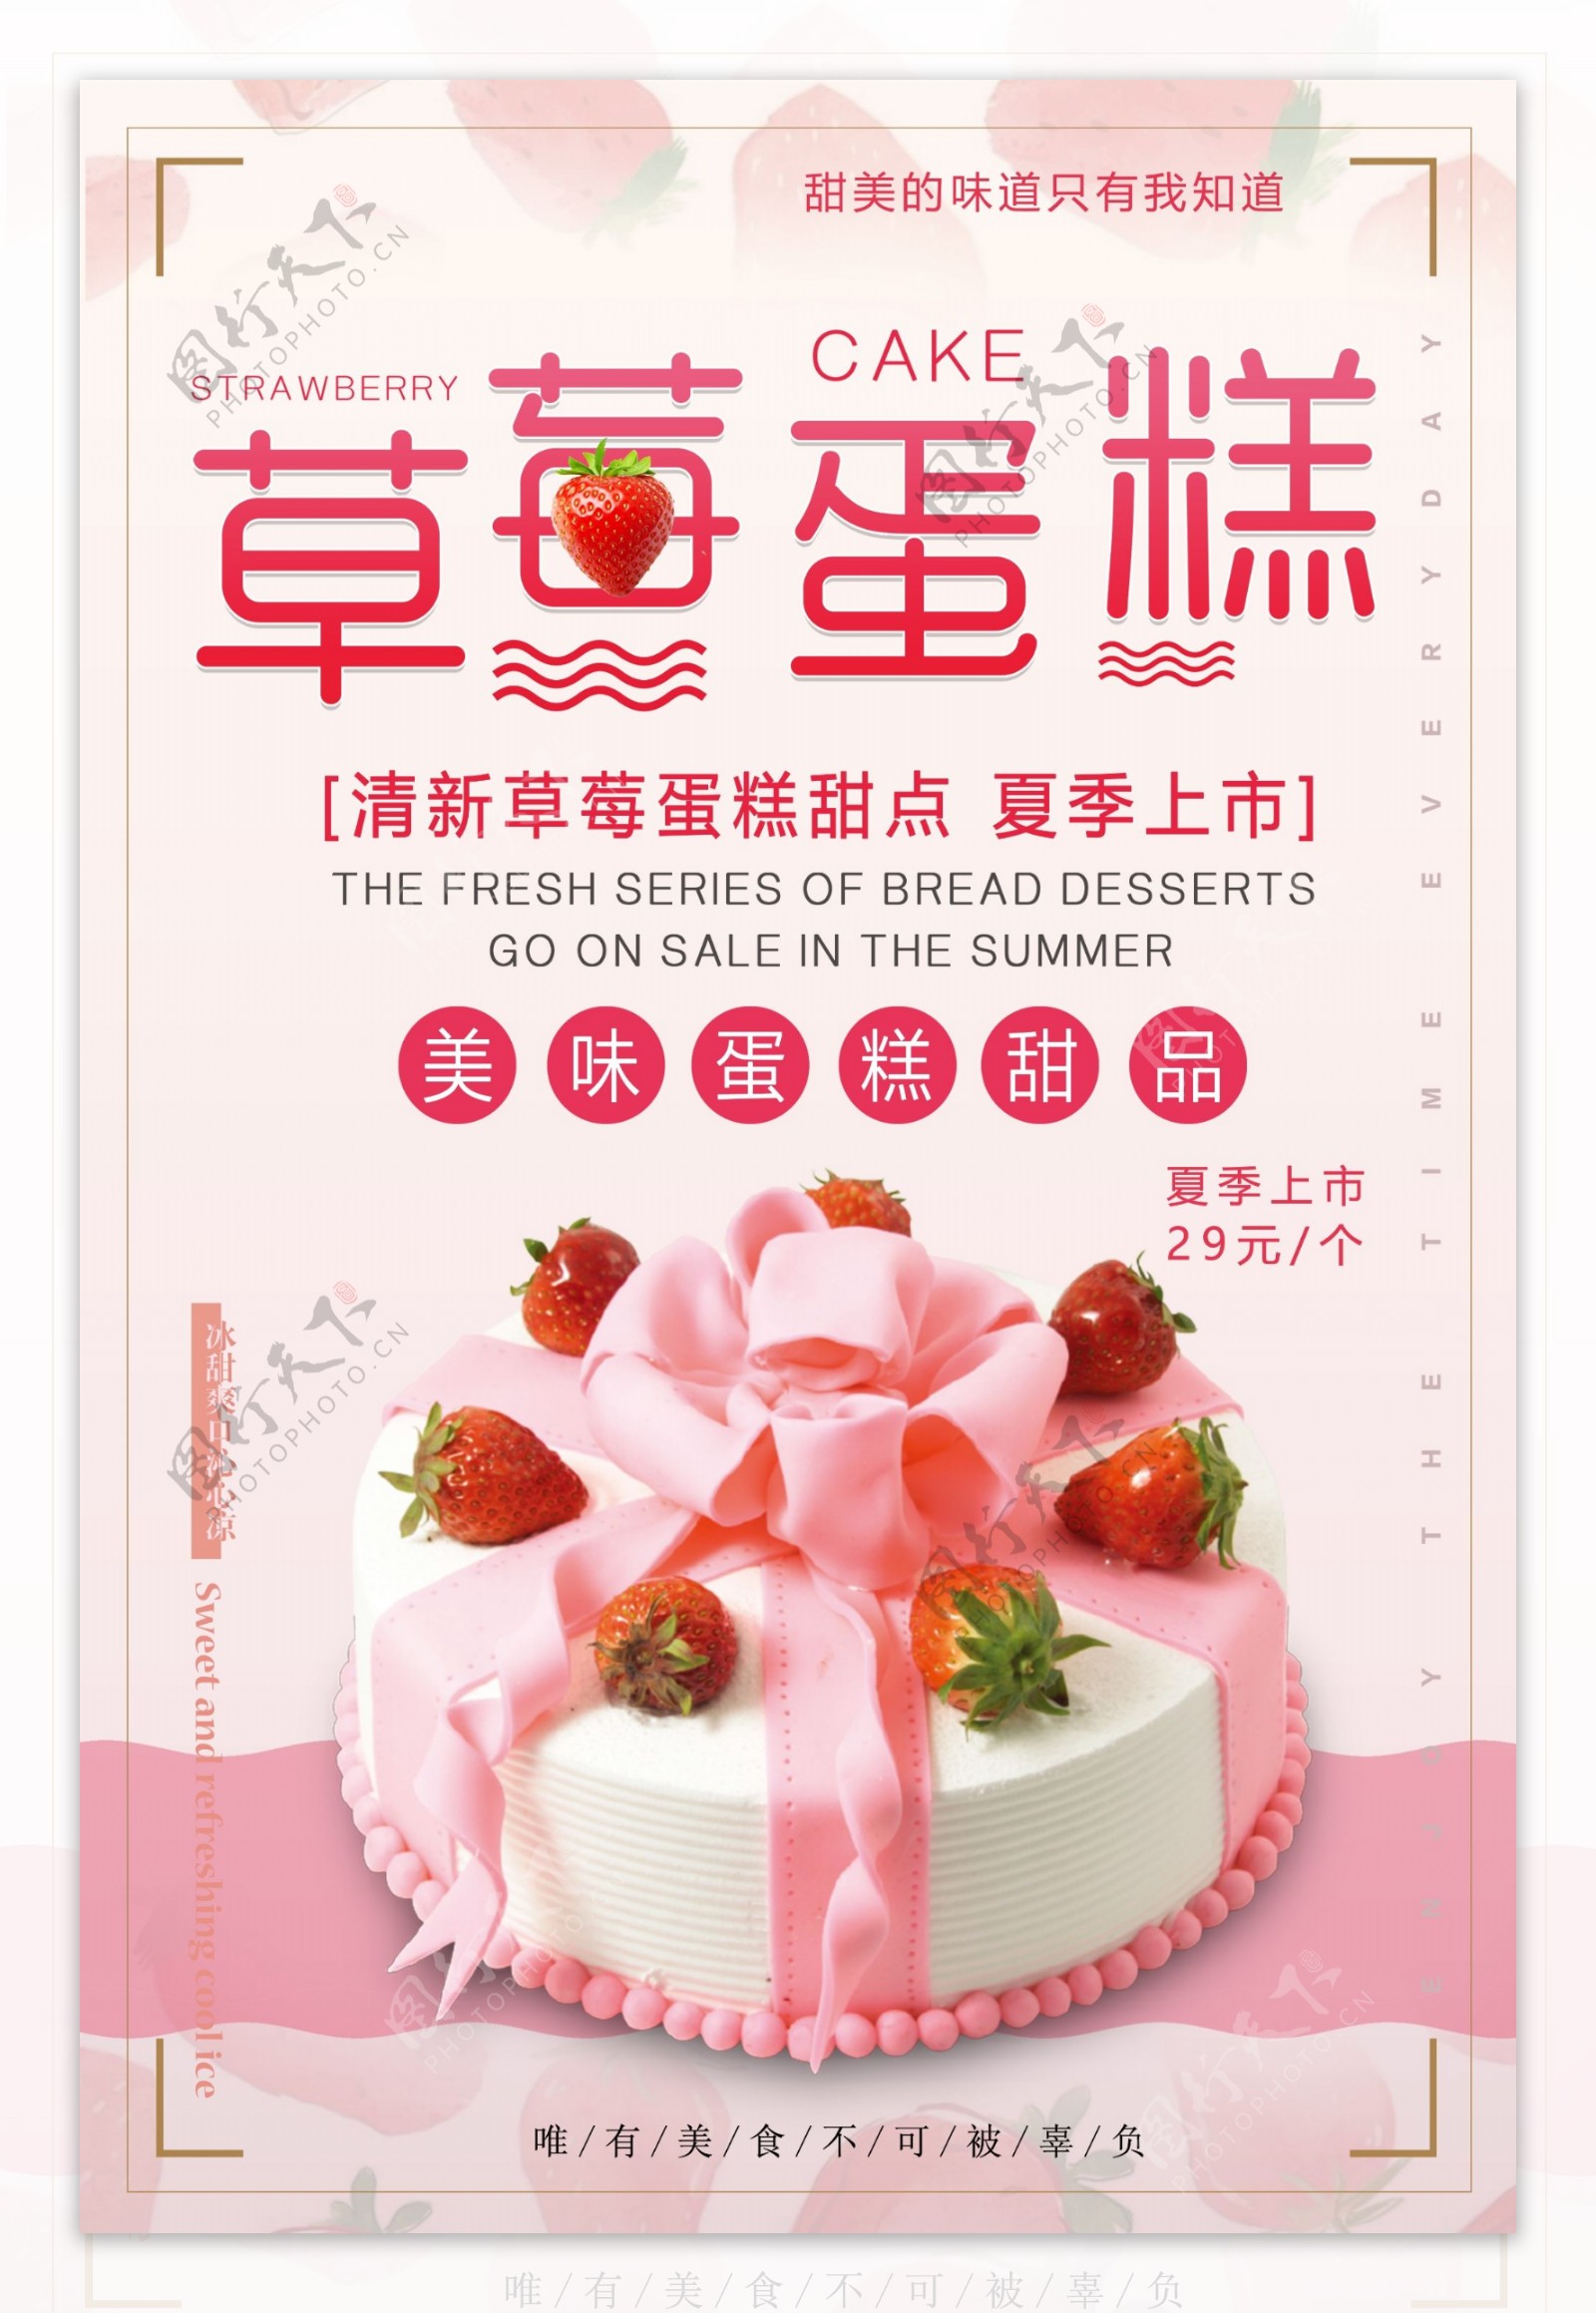 粉色简洁大气草莓蛋糕甜品